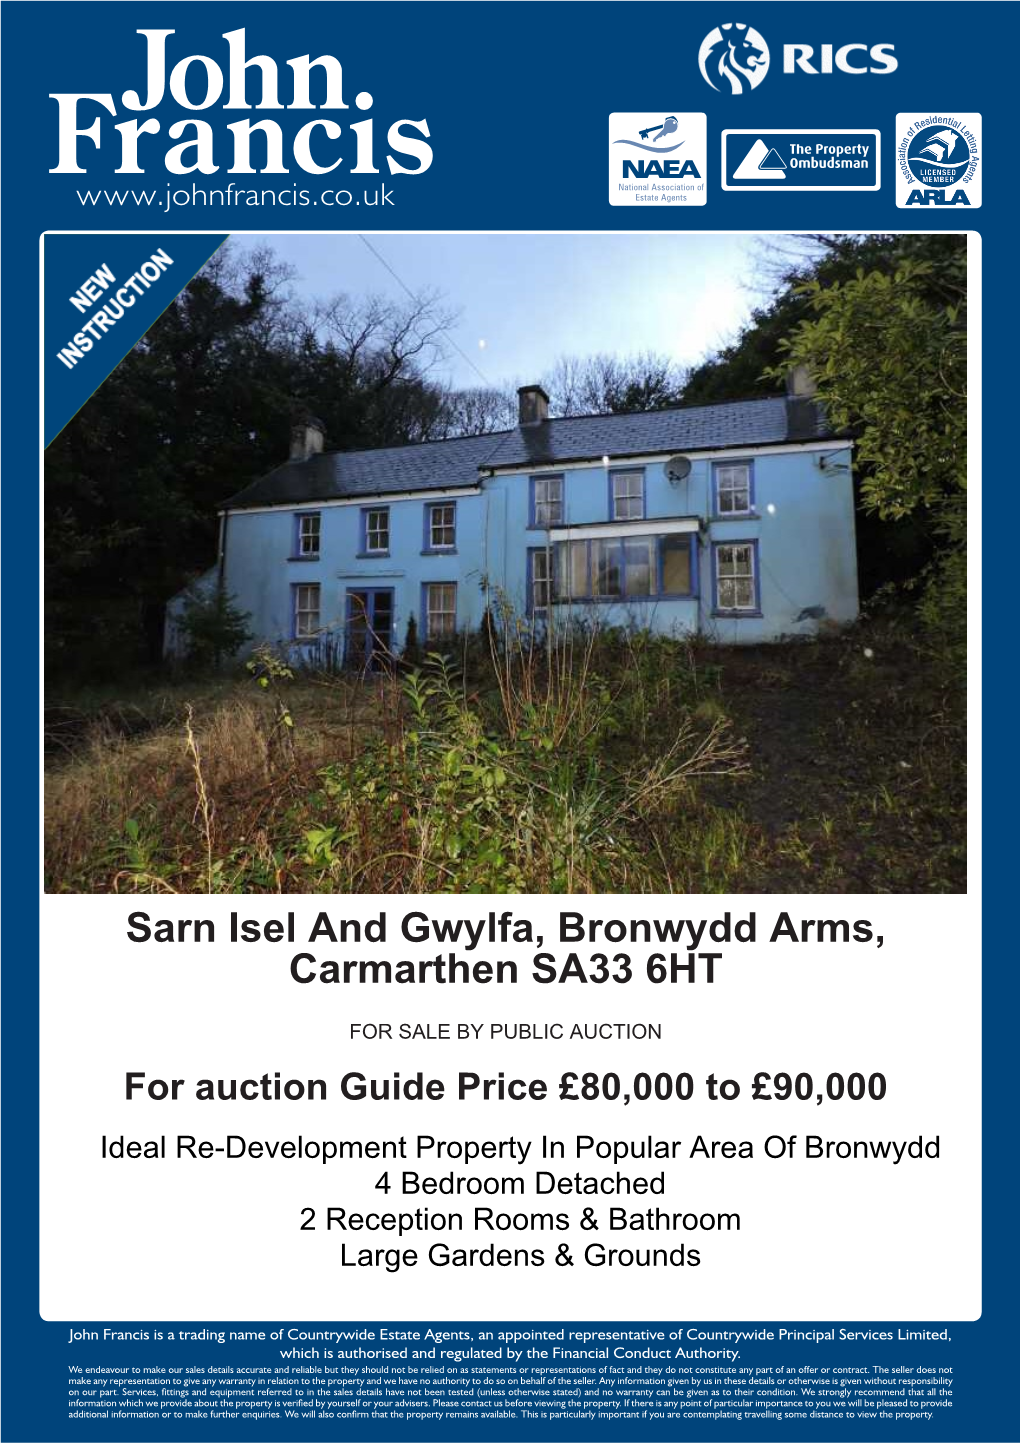 Sarn Isel and Gwylfa, Bronwydd Arms, Carmarthen SA33 6HT